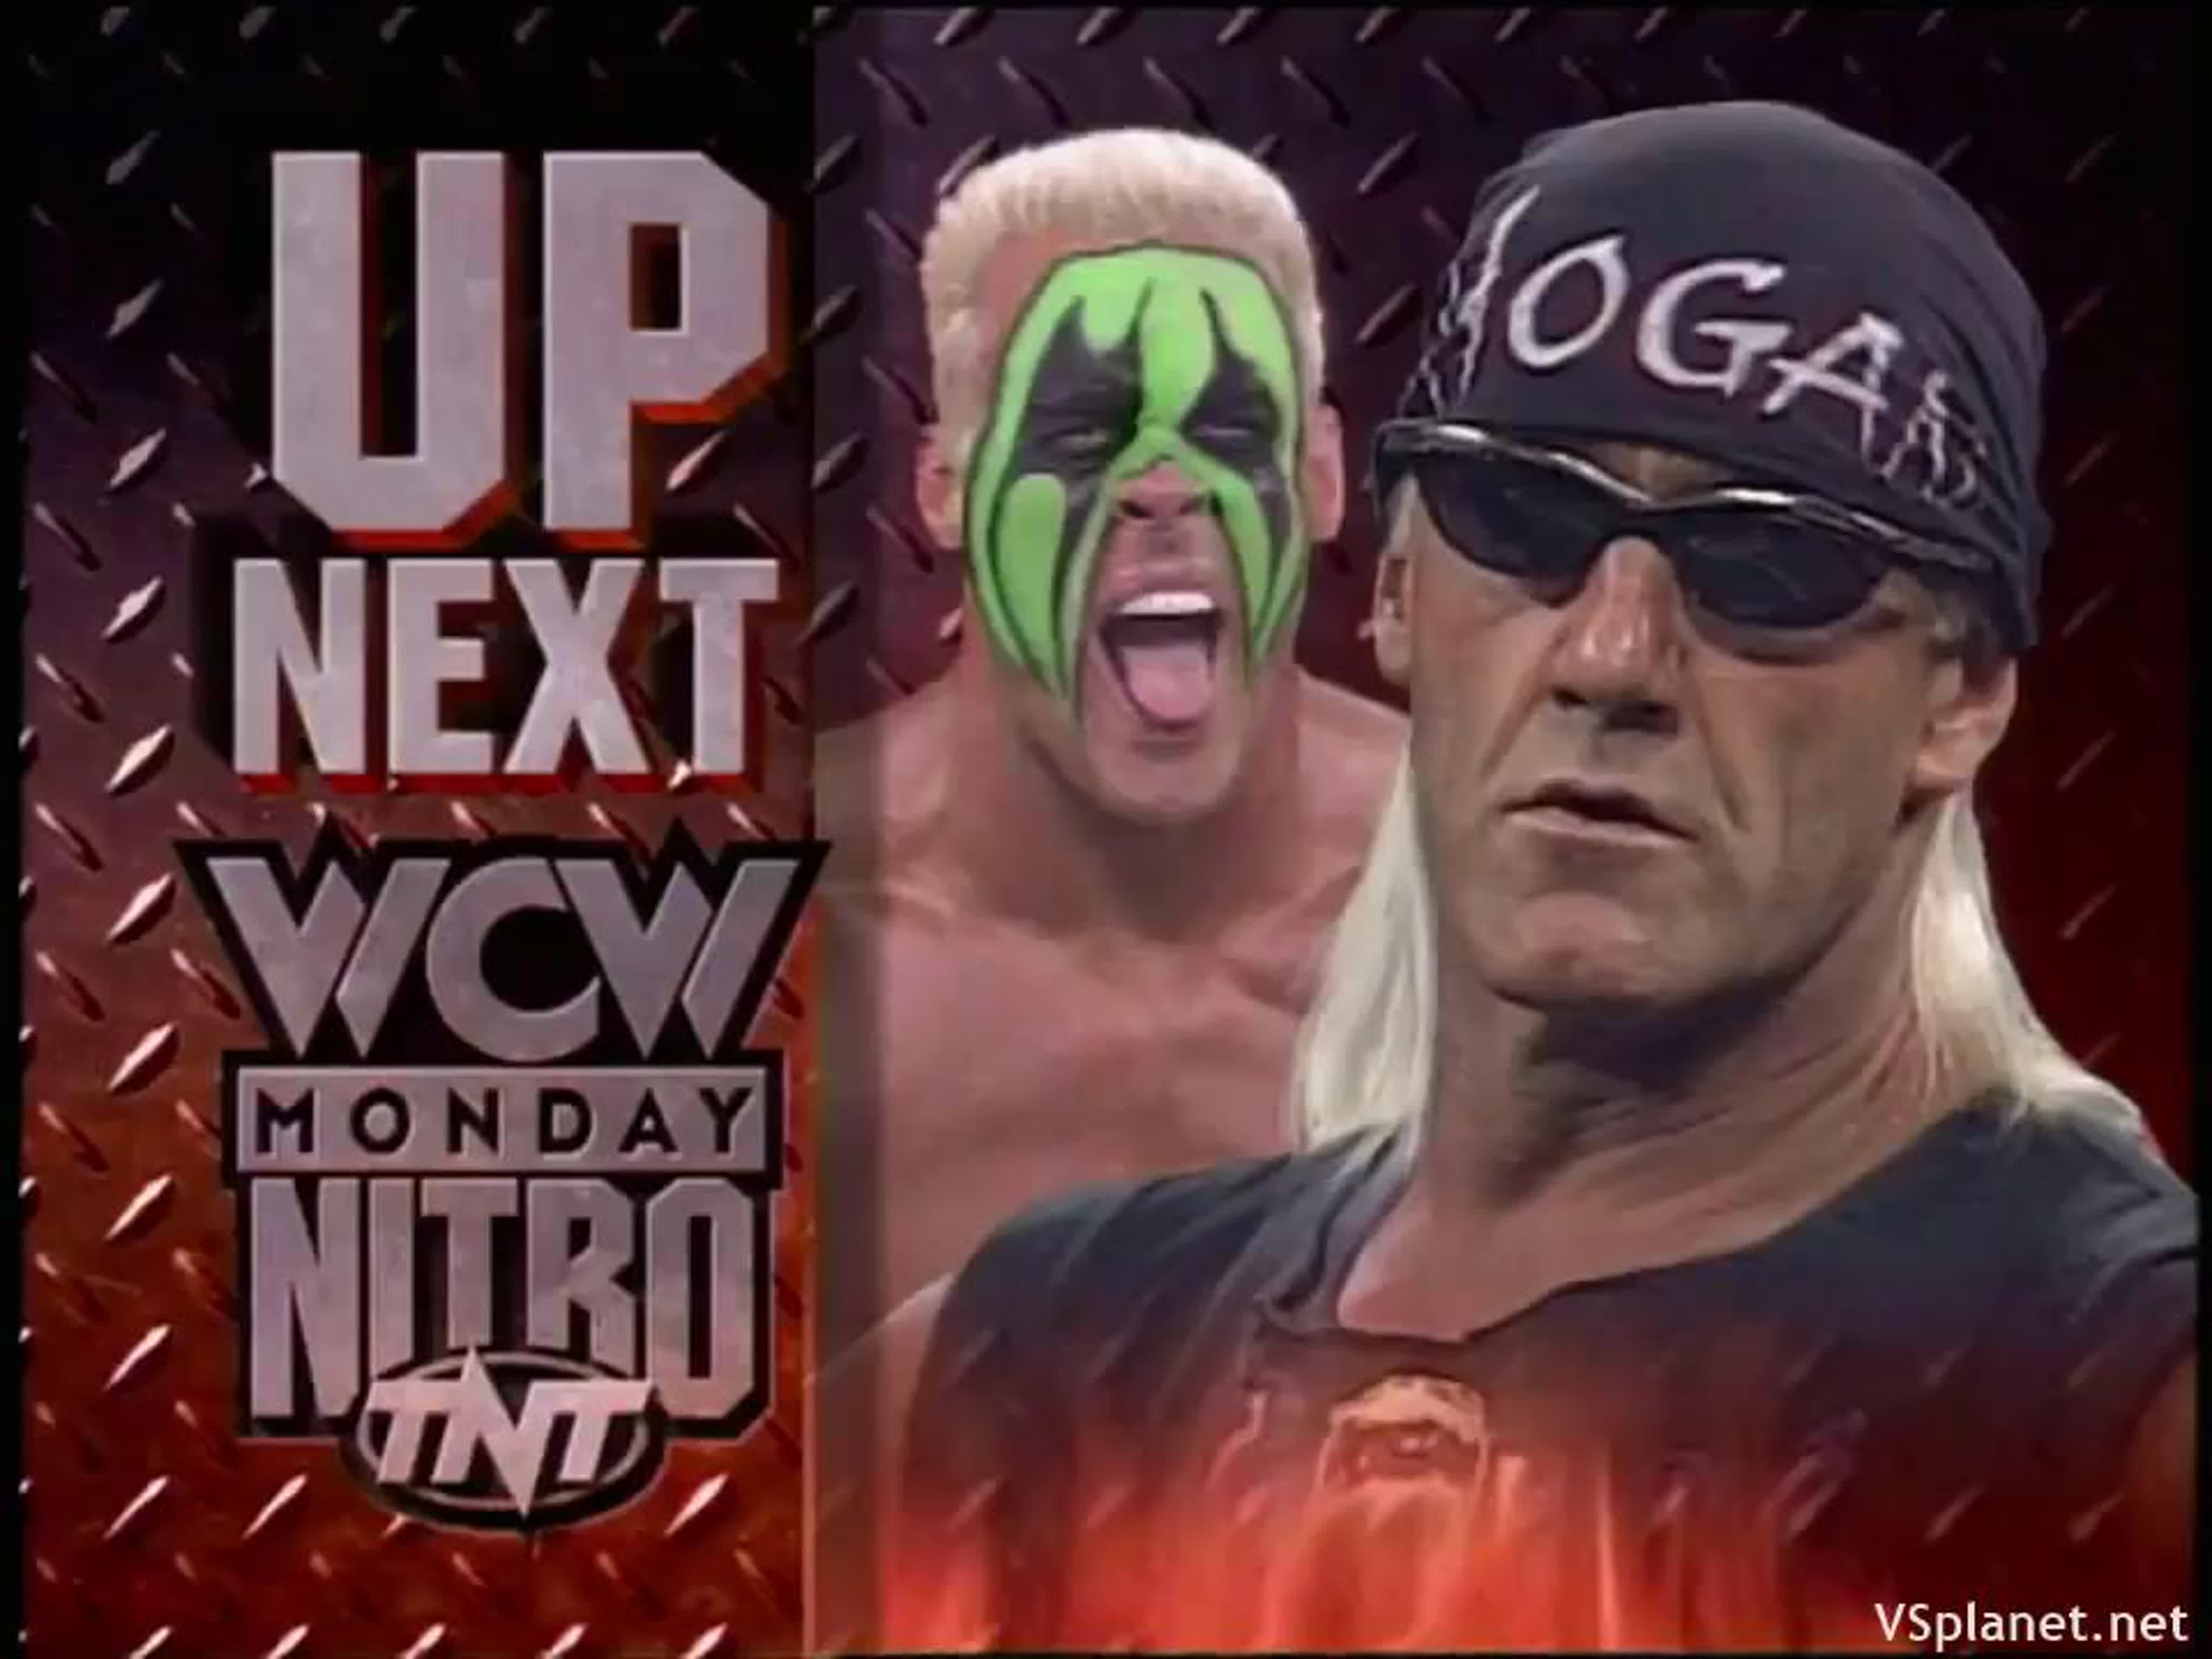 WCW Monday Nitro 1995